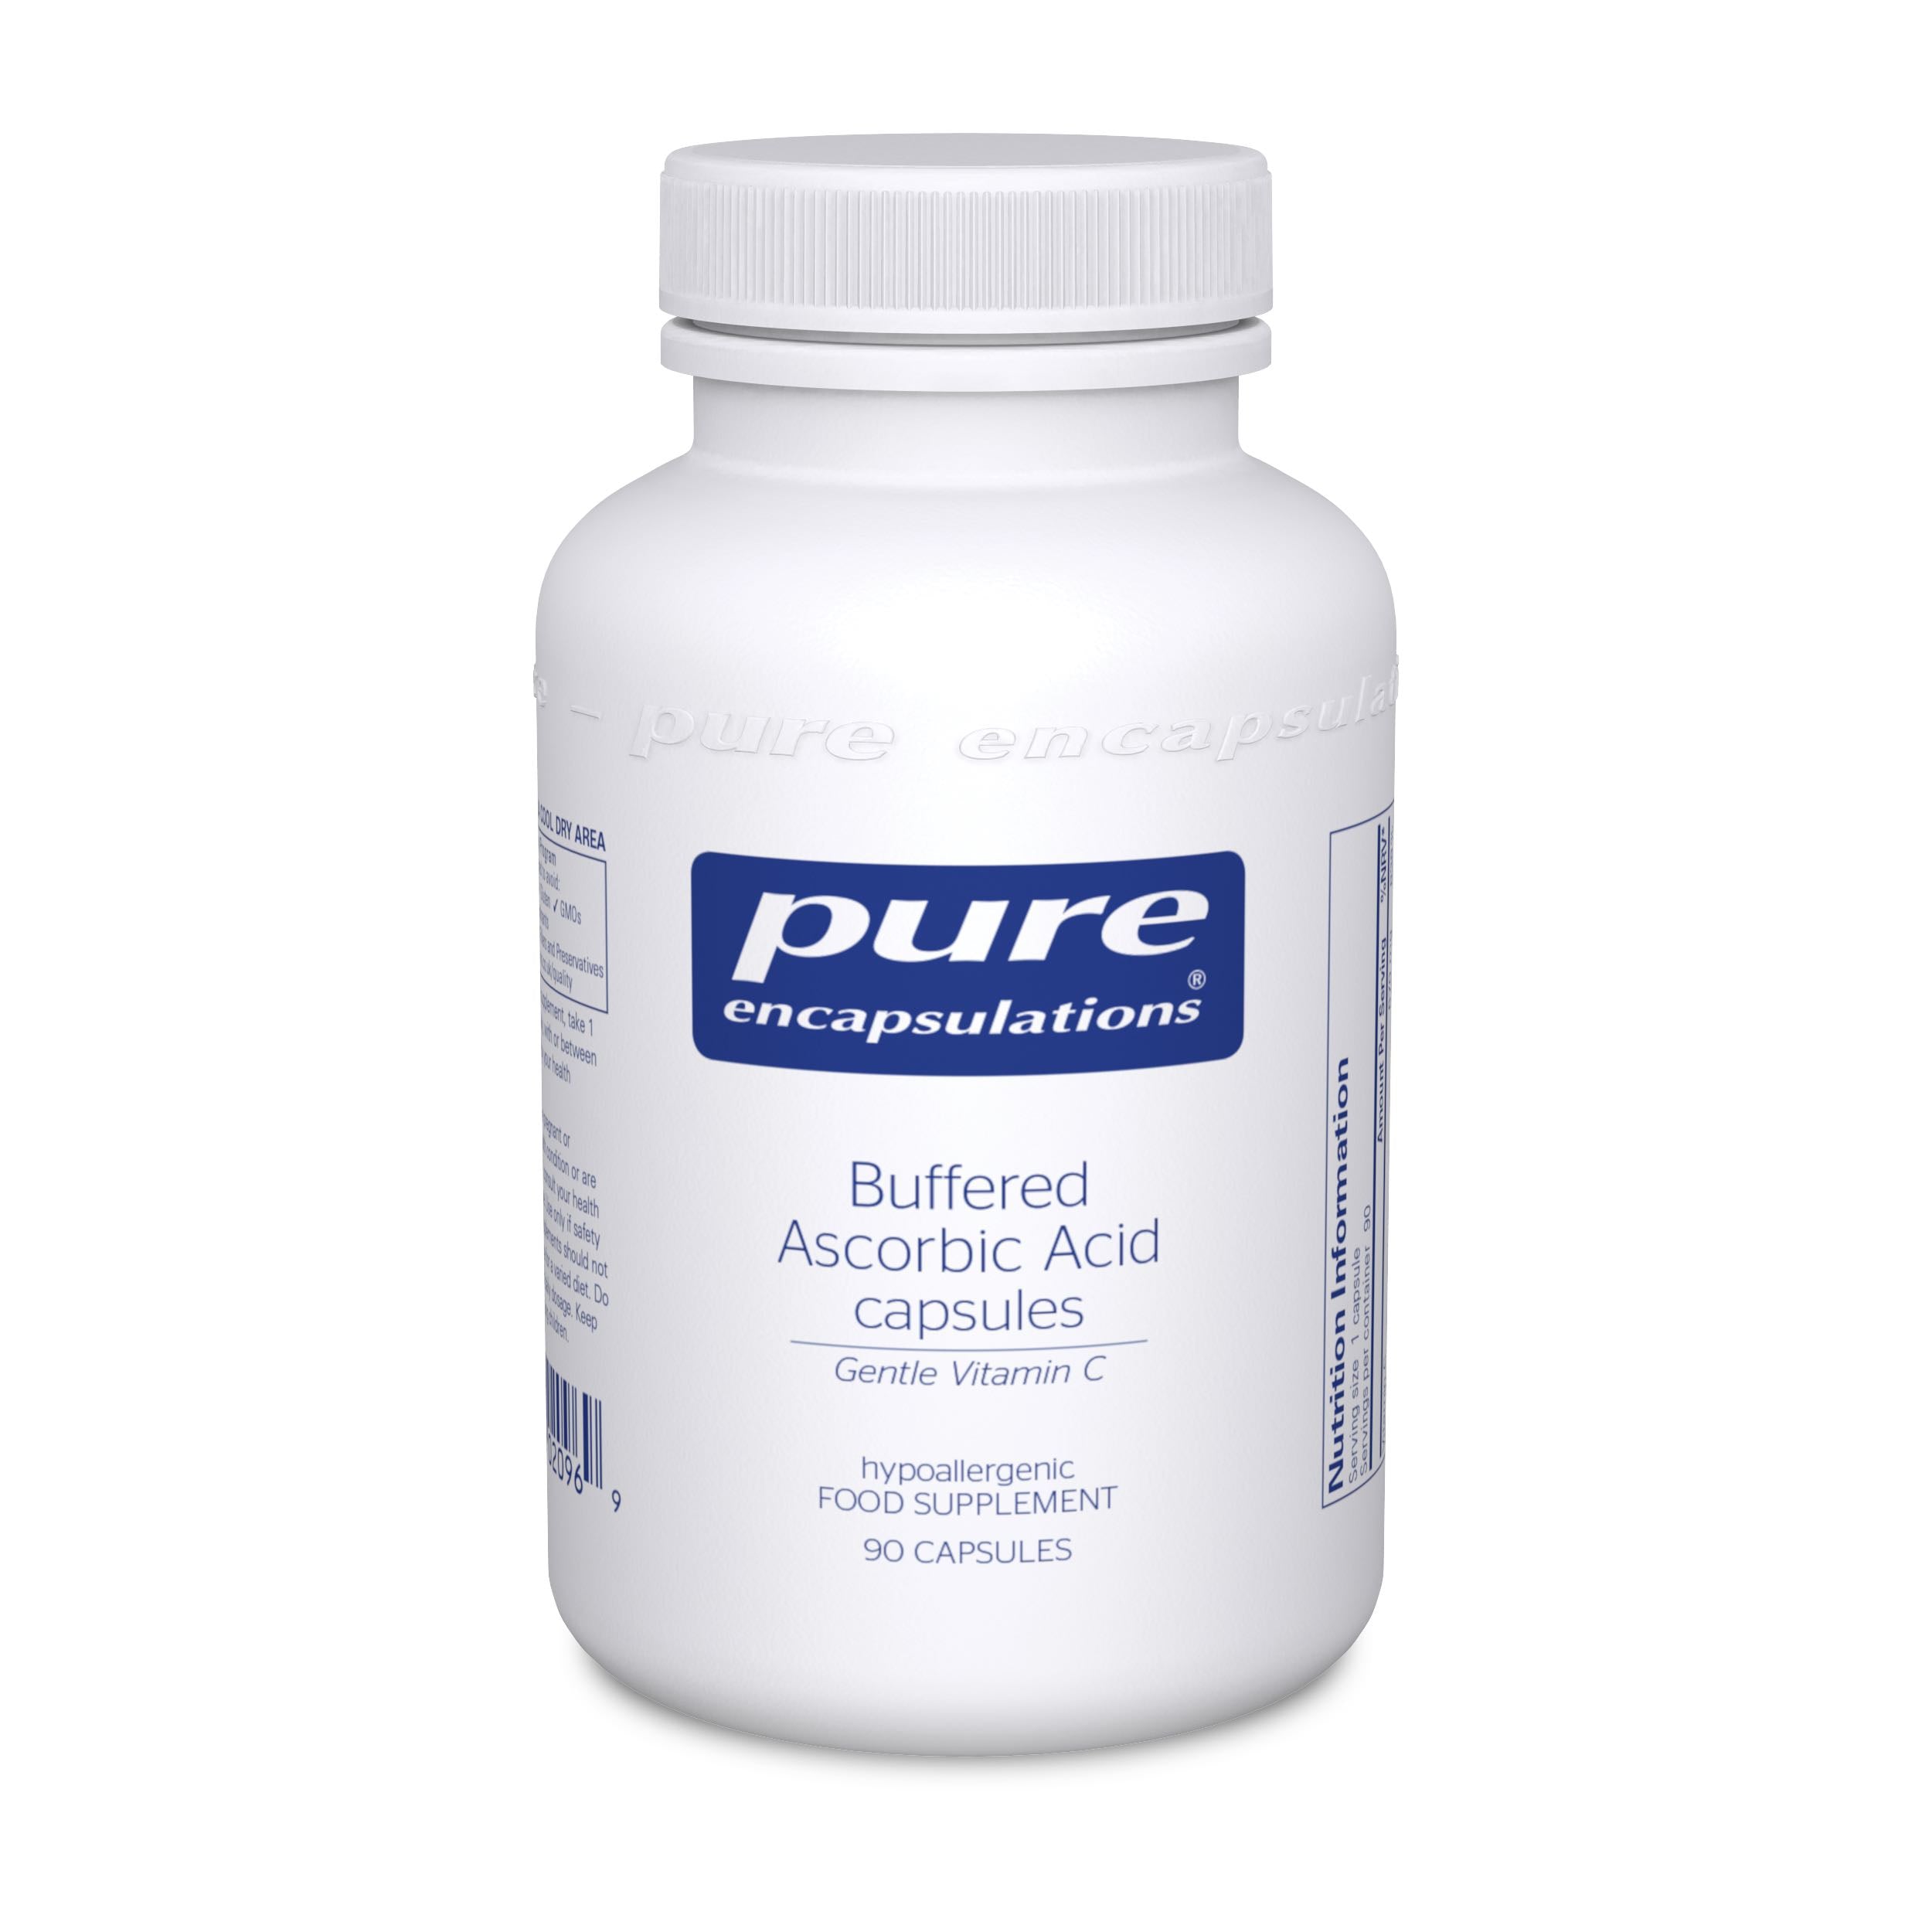 Pure Encapsulations Buffered Ascorbic Acid Capsules Gentle Vitamin C 90's